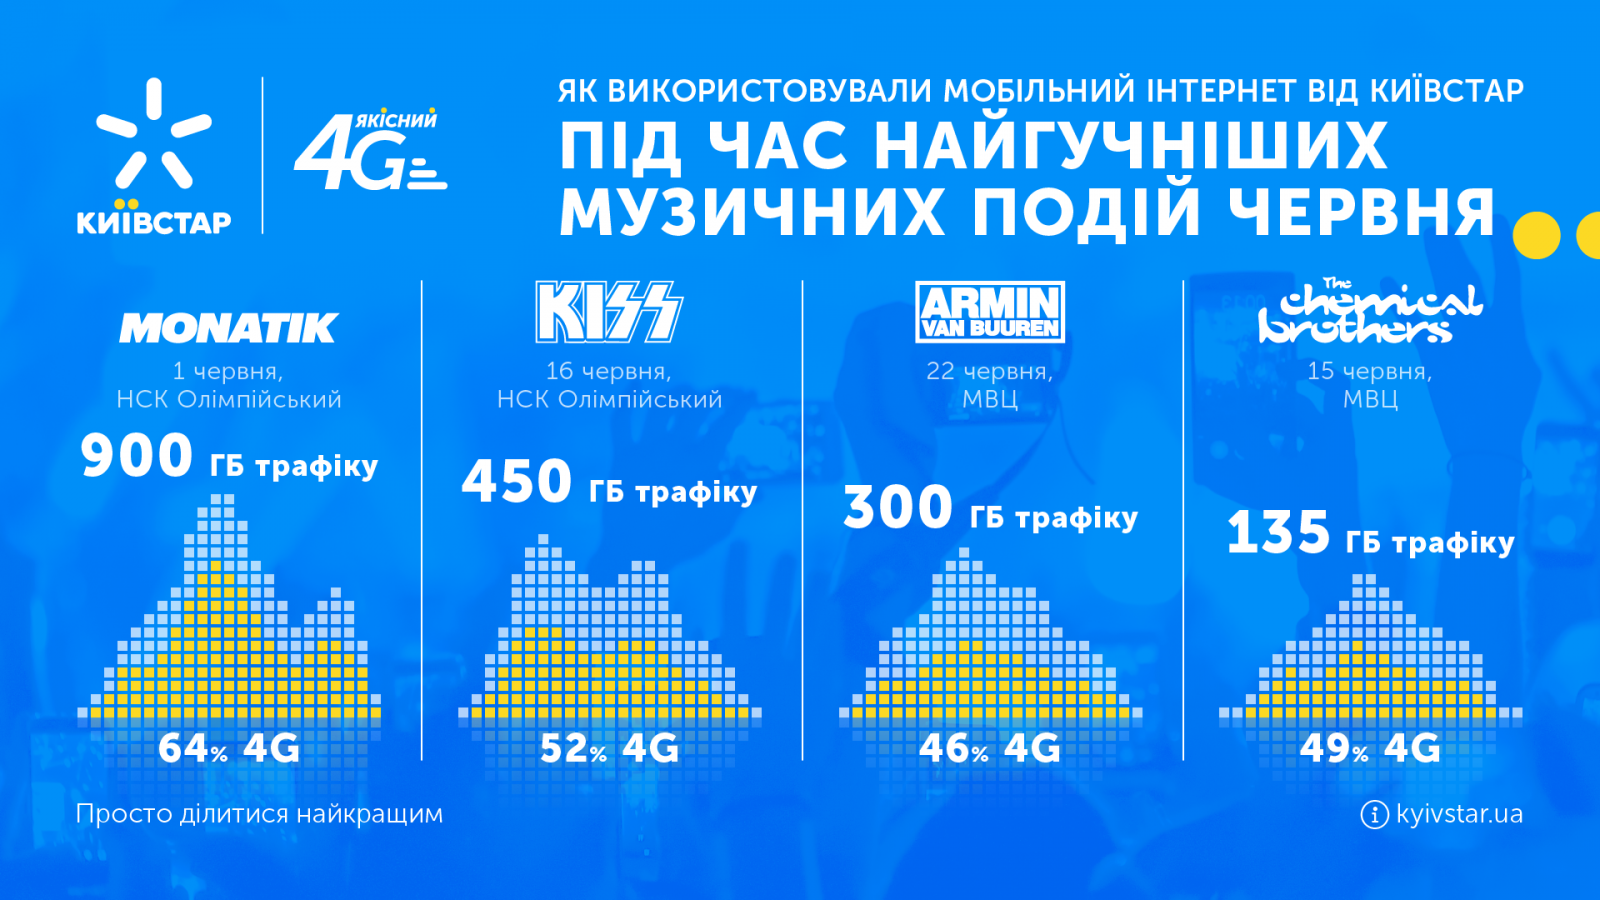 Концерты MONATIK и KISS увеличили использование 4G-интернета от Киевстар